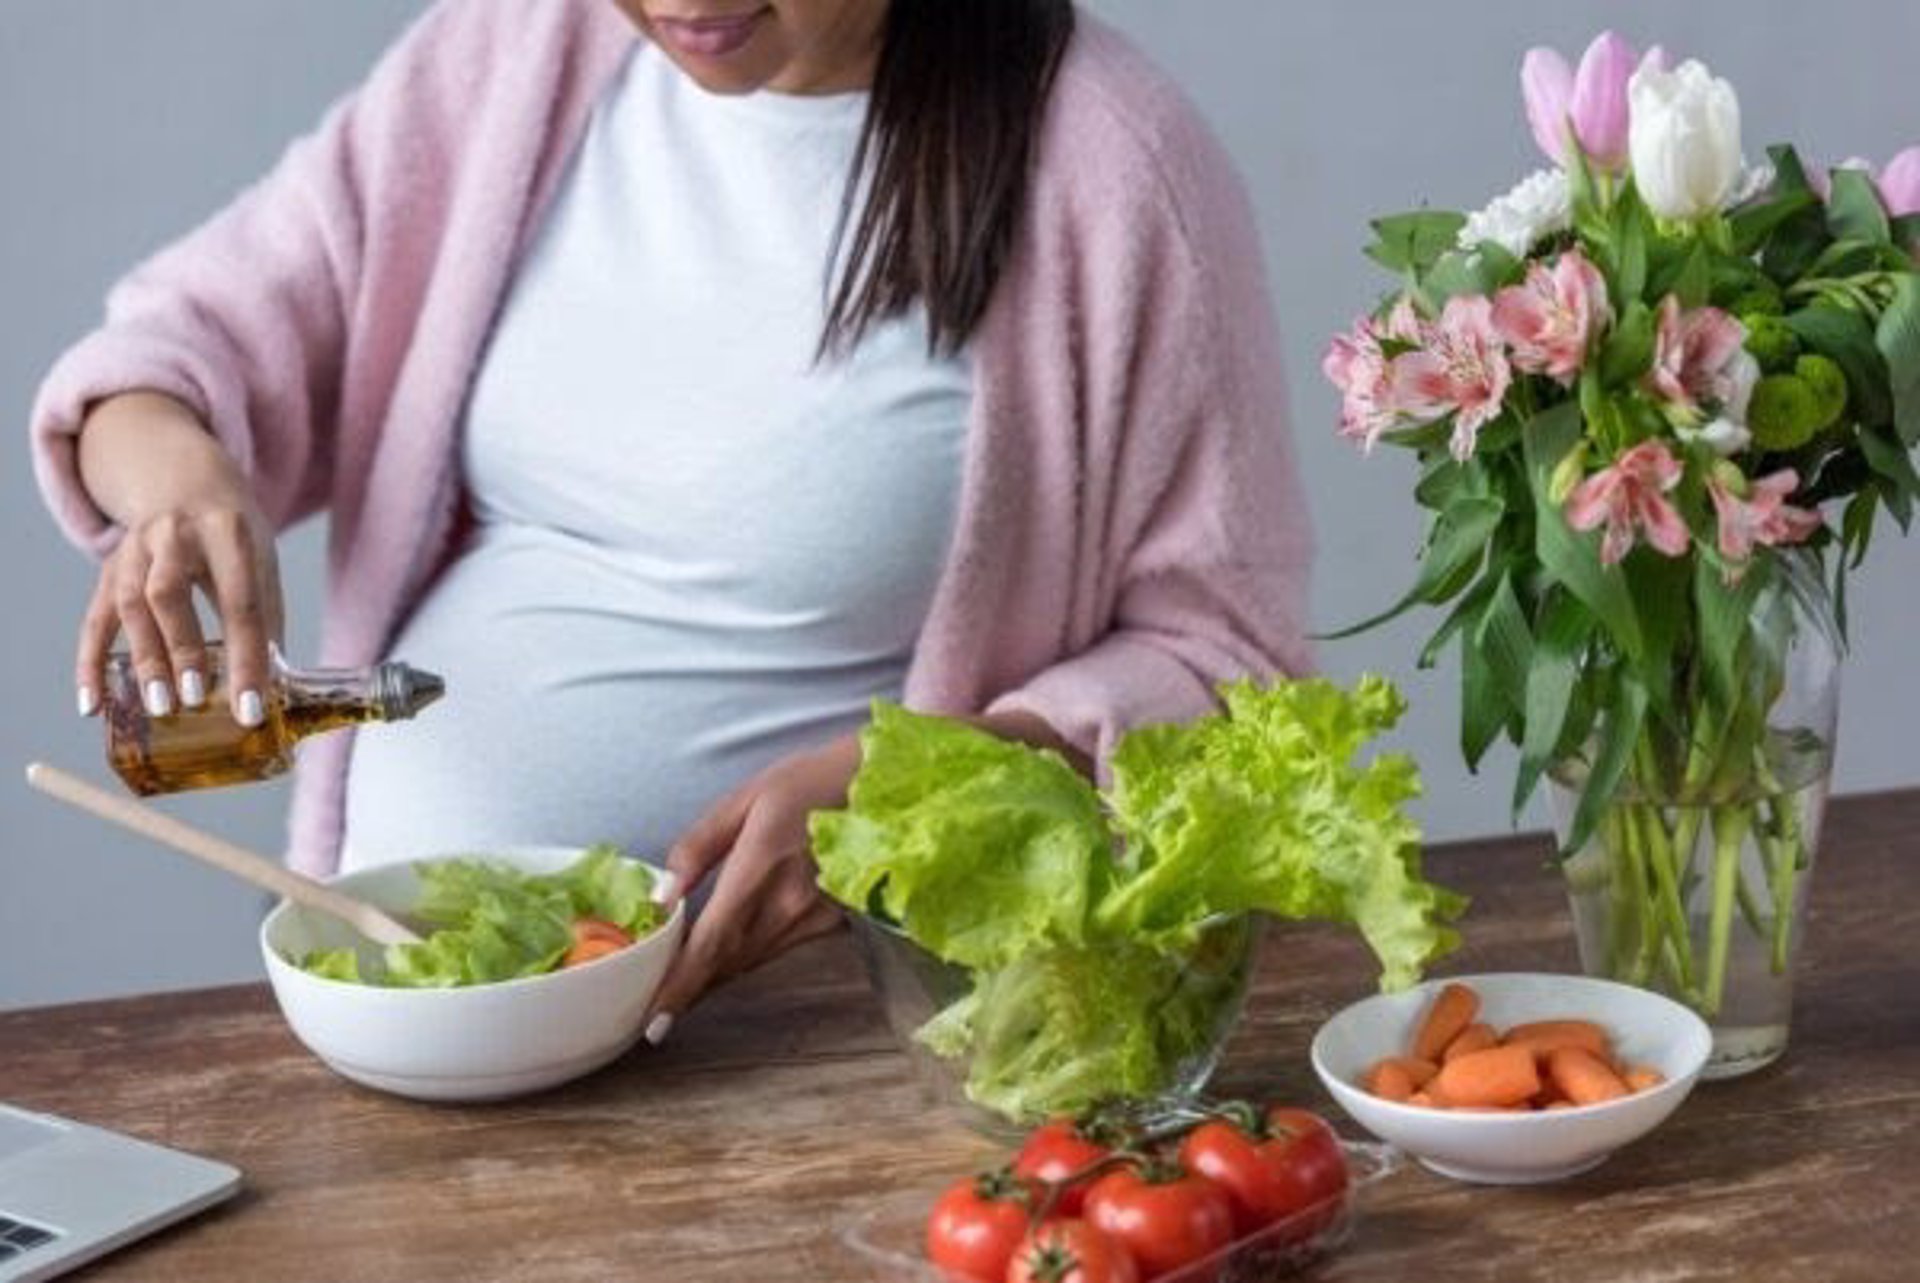 El consumo de aceite de oliva virgen extra en embarazadas mejora el desarrollo cerebral de fetos con bajo peso